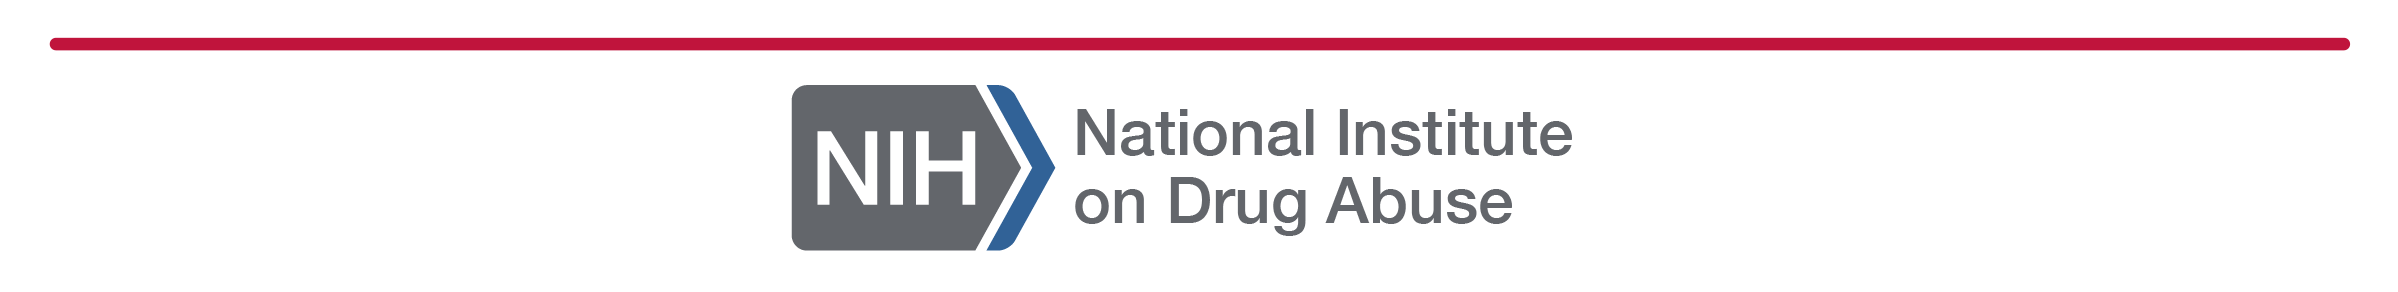 NIH - FDA Logo